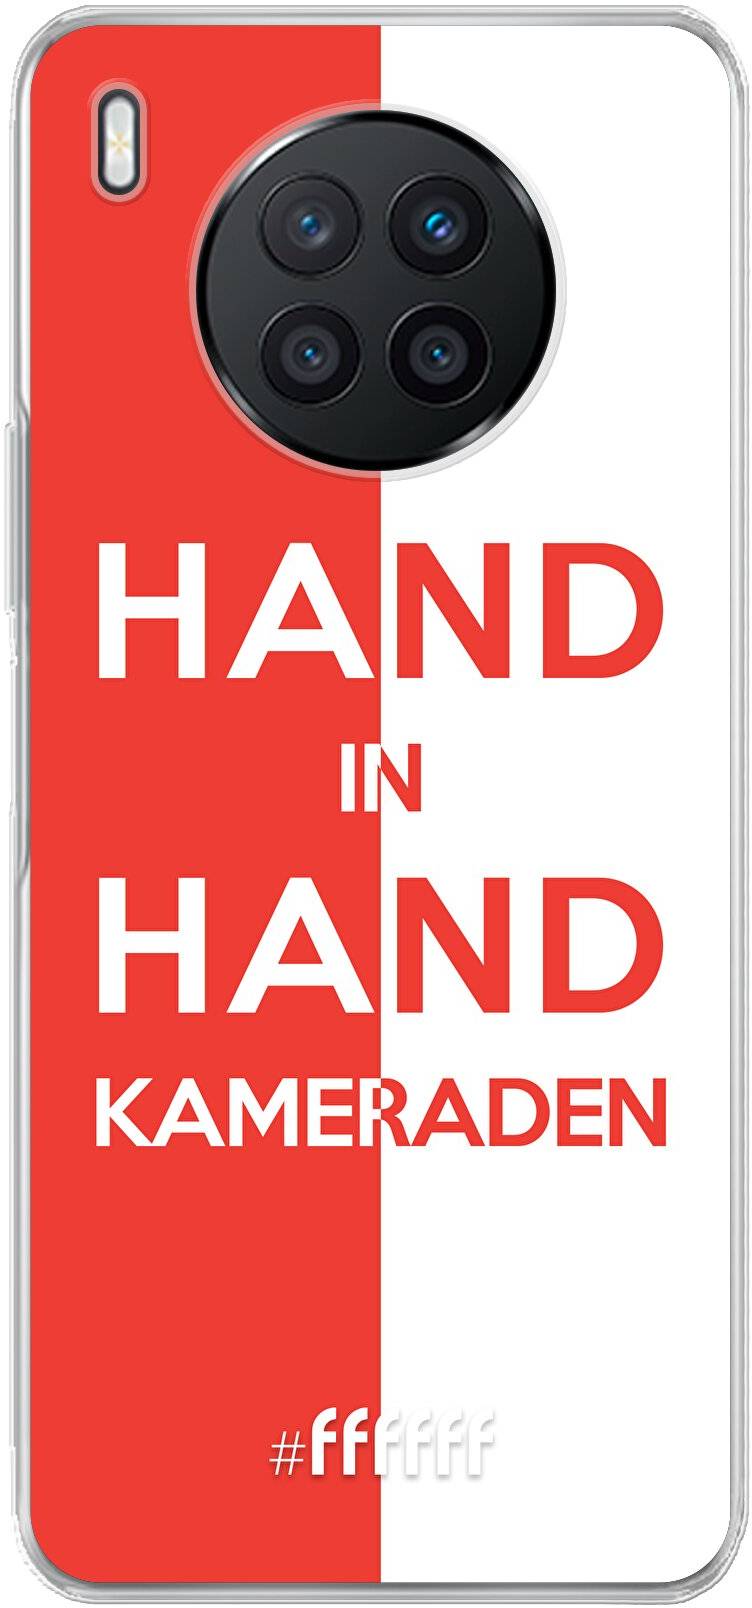 Feyenoord - Hand in hand, kameraden Nova 8i